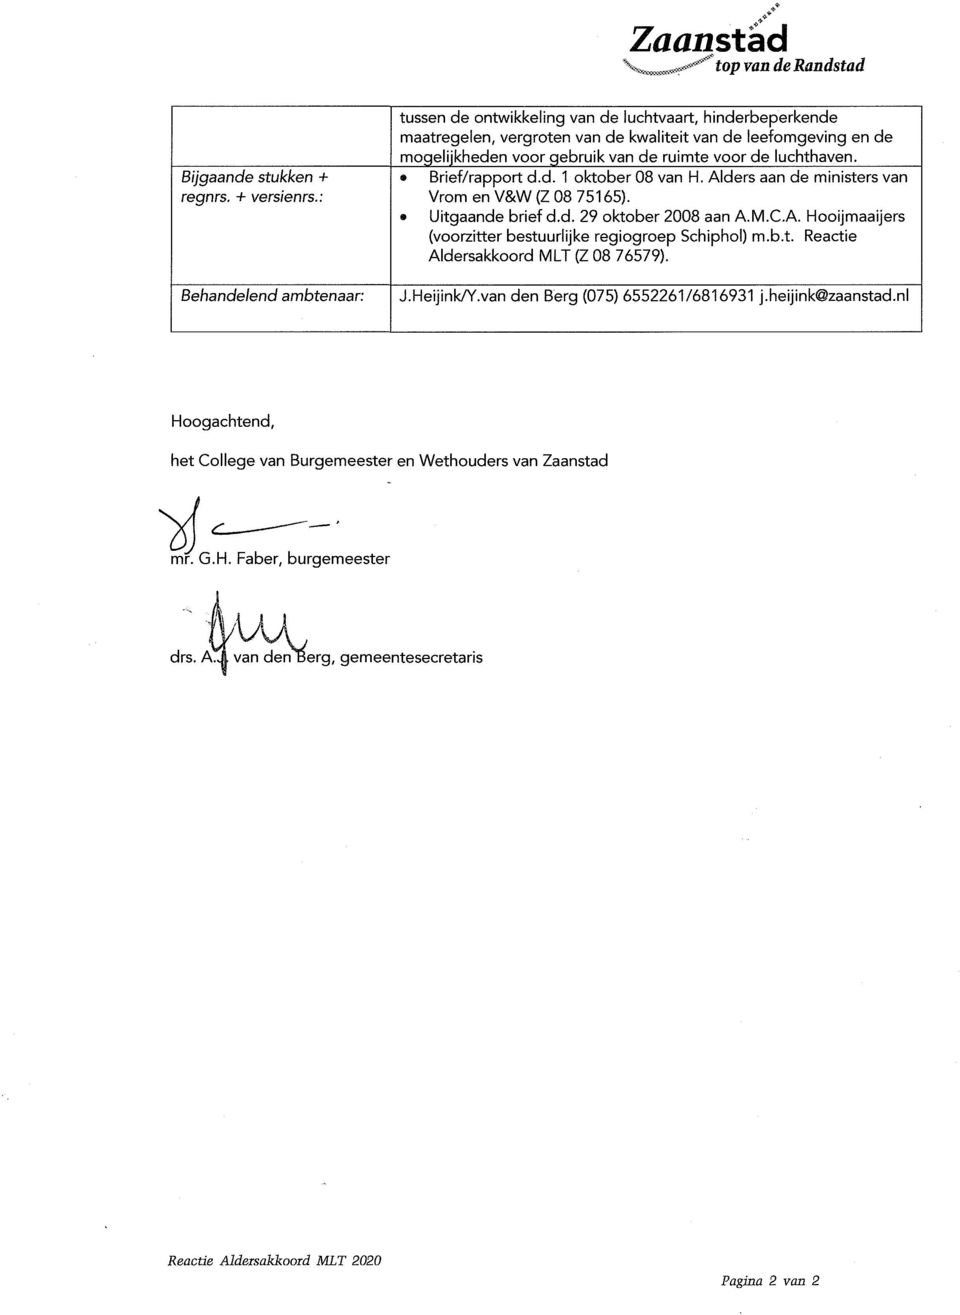 voor de luchthaven. Brief/rapport d.d. 1 oktober 08 van H. Alders aan de ministers van Vrom en V&W (Z 08 751 65). Uitgaande brief d.d. 29 oktober 2008 aan A.M.C.A. Hooijmaaijers (voorzitter bestuurlijke regiogroep Schiphol) m.